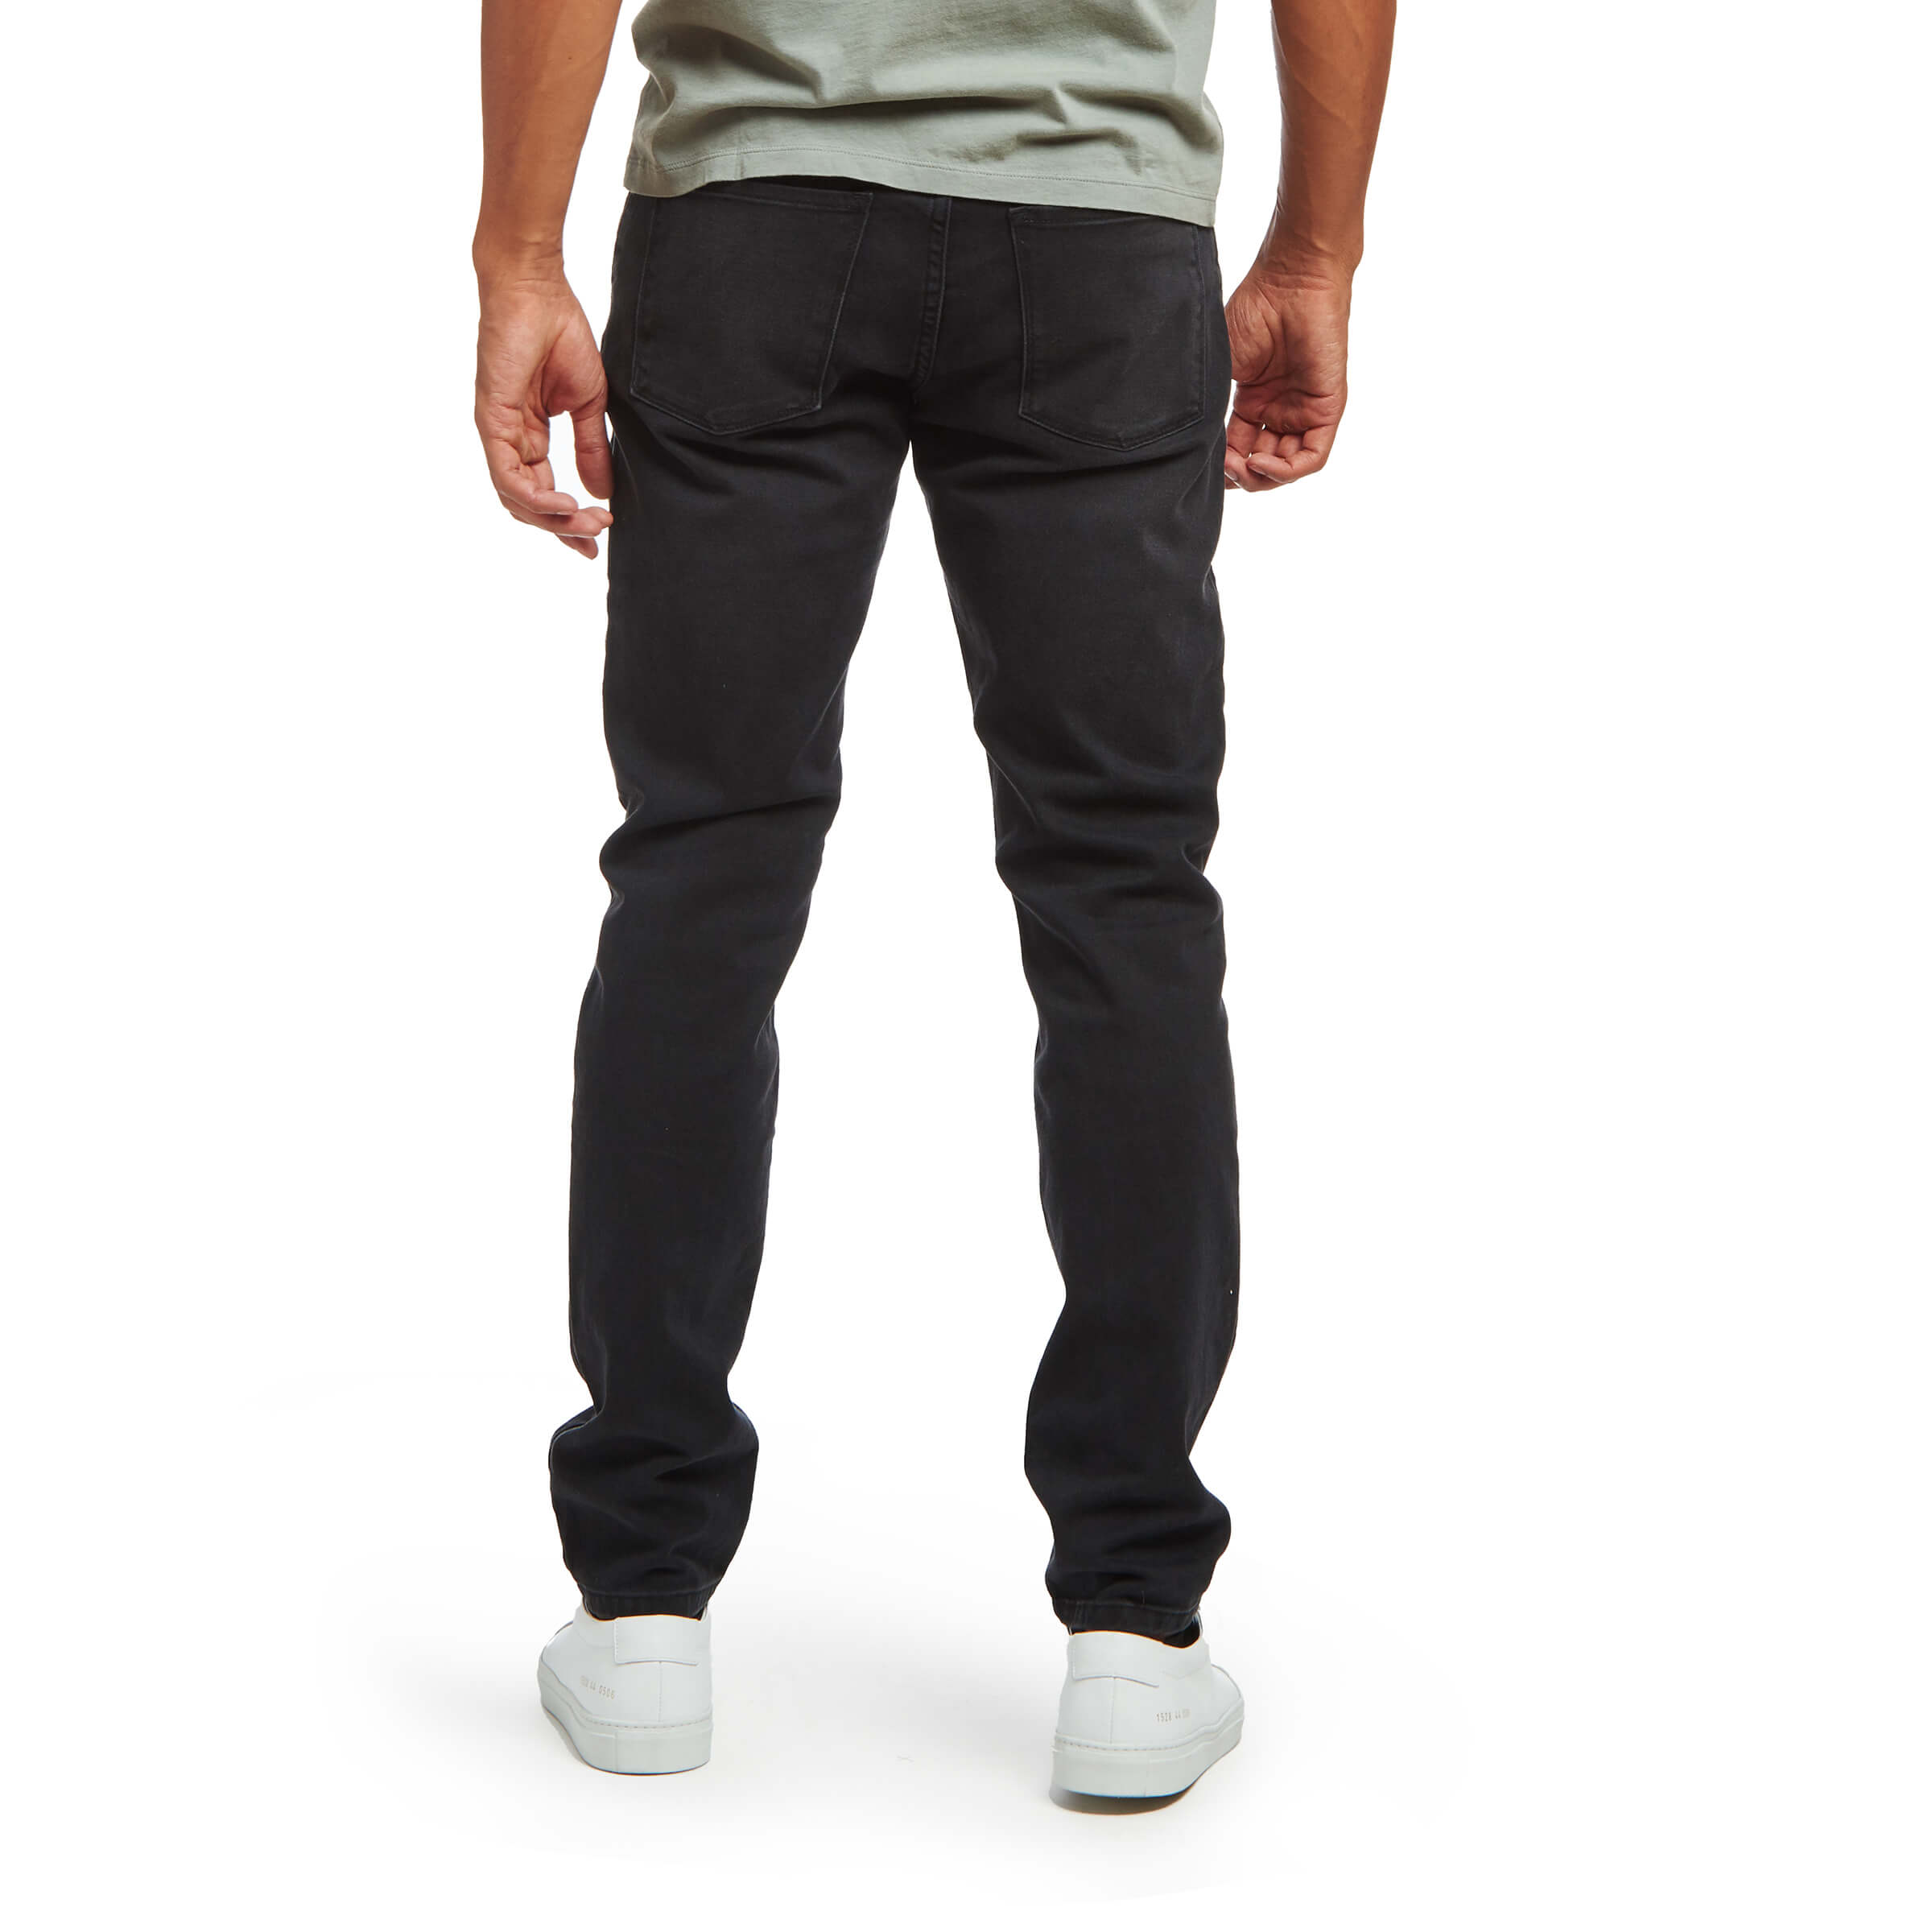 Men wearing Gris Médium/Foncé Skinny Stone Jeans